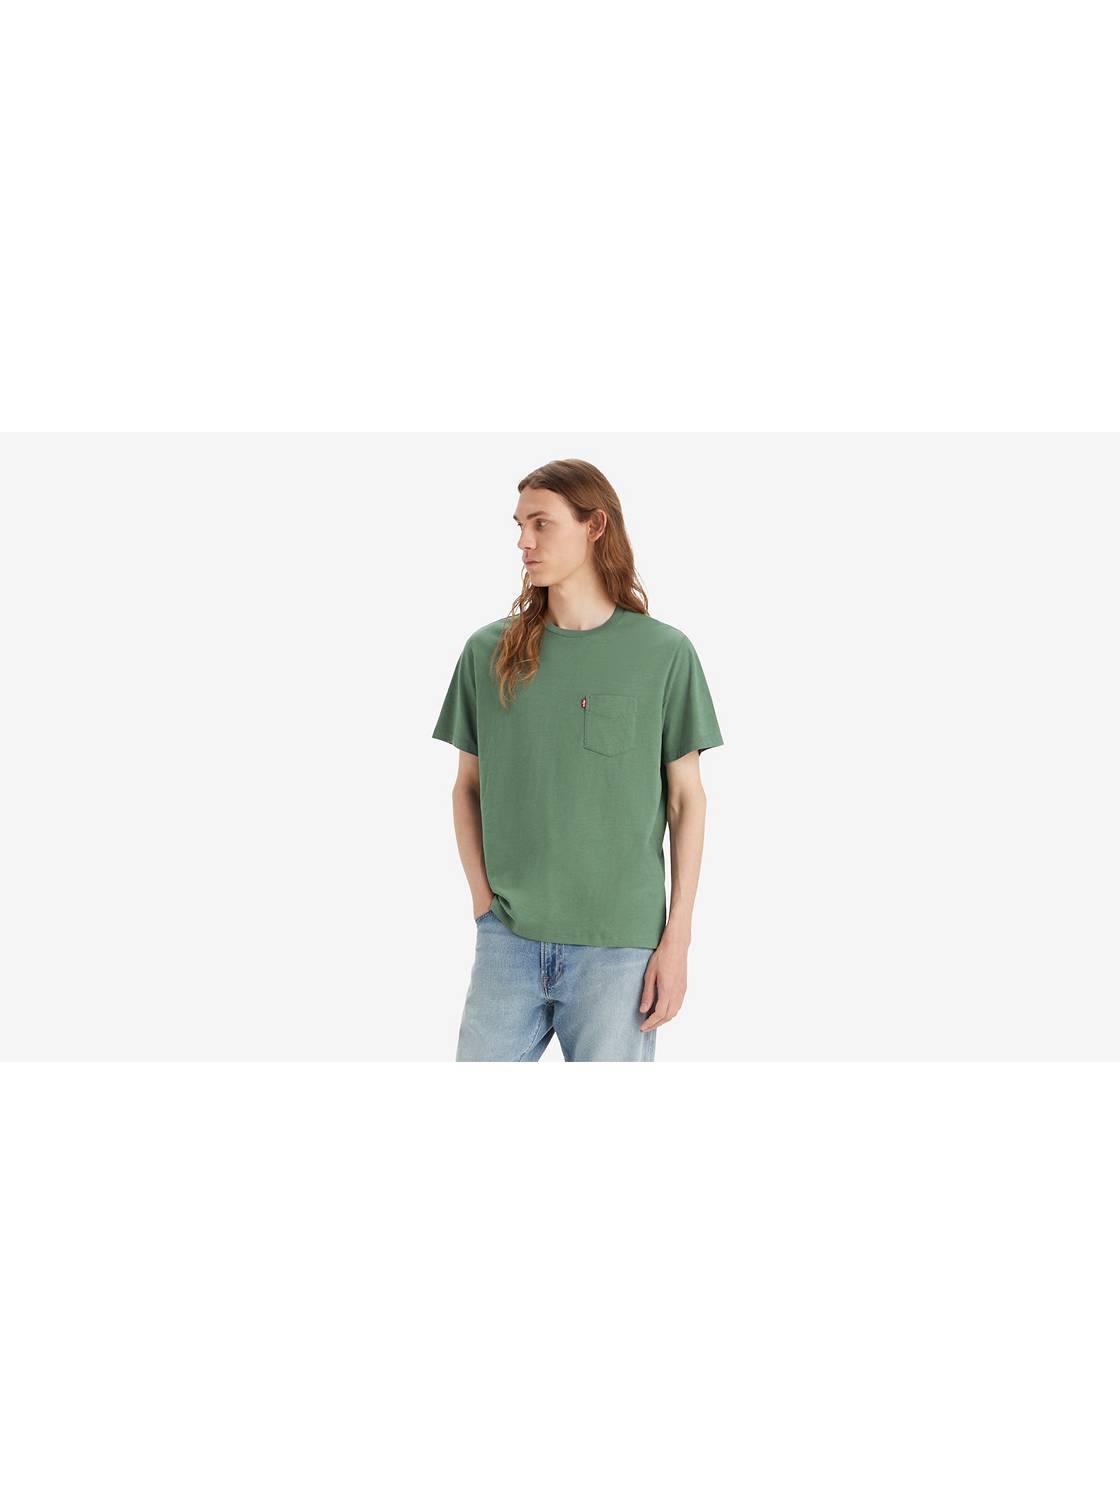 T-shirt Levi's® pour hommes avec logo ⋆ Lehner Versand